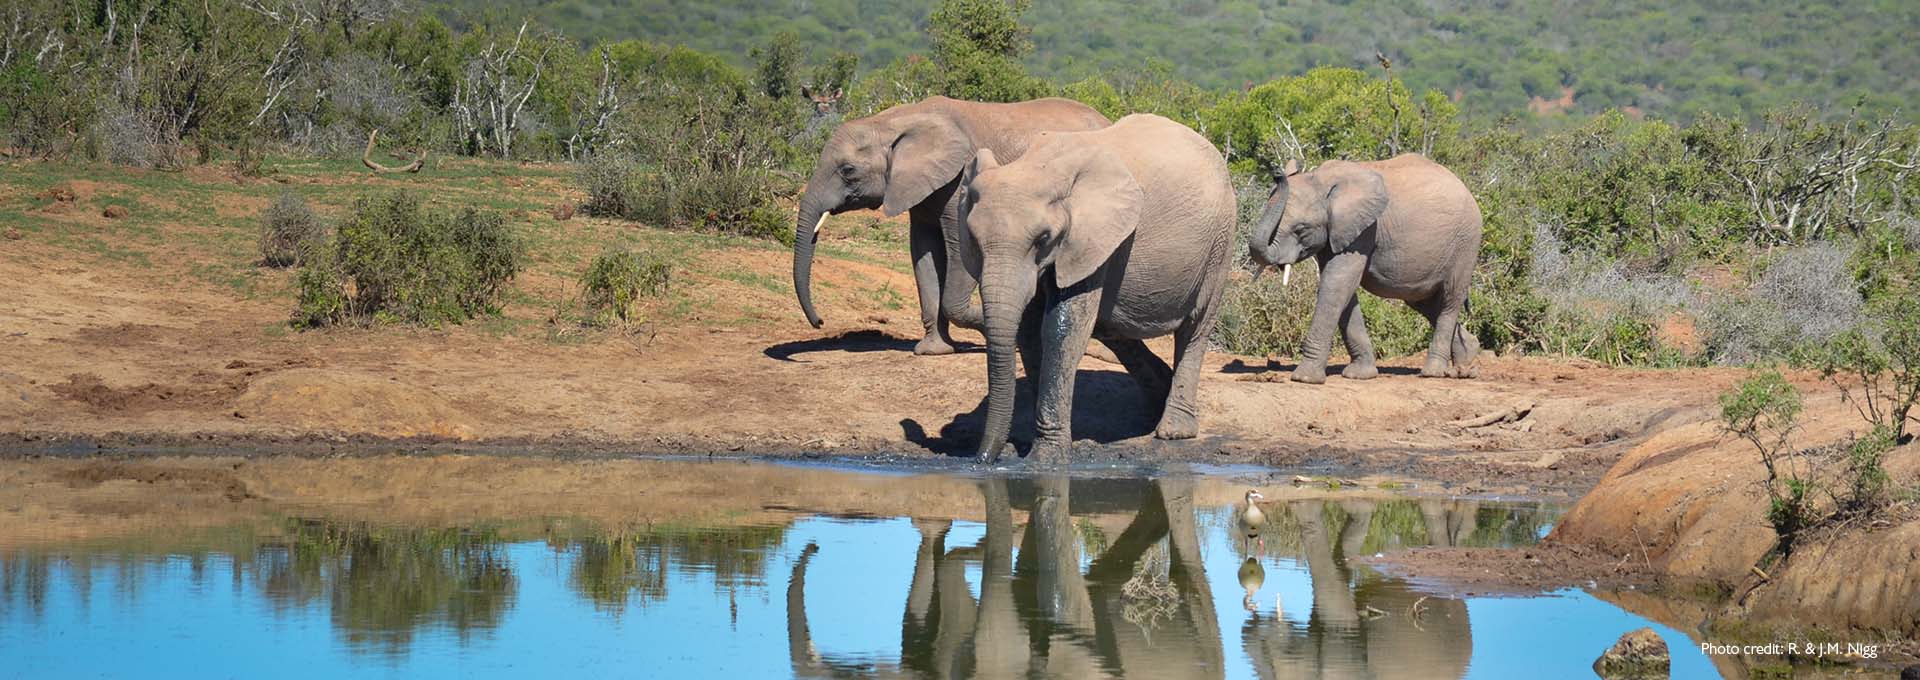 Billede af en elefantfamilie ved en lille sø med grønne buske i baggrunden fotograferet af Bernafon Alpha høreapparatbrugere